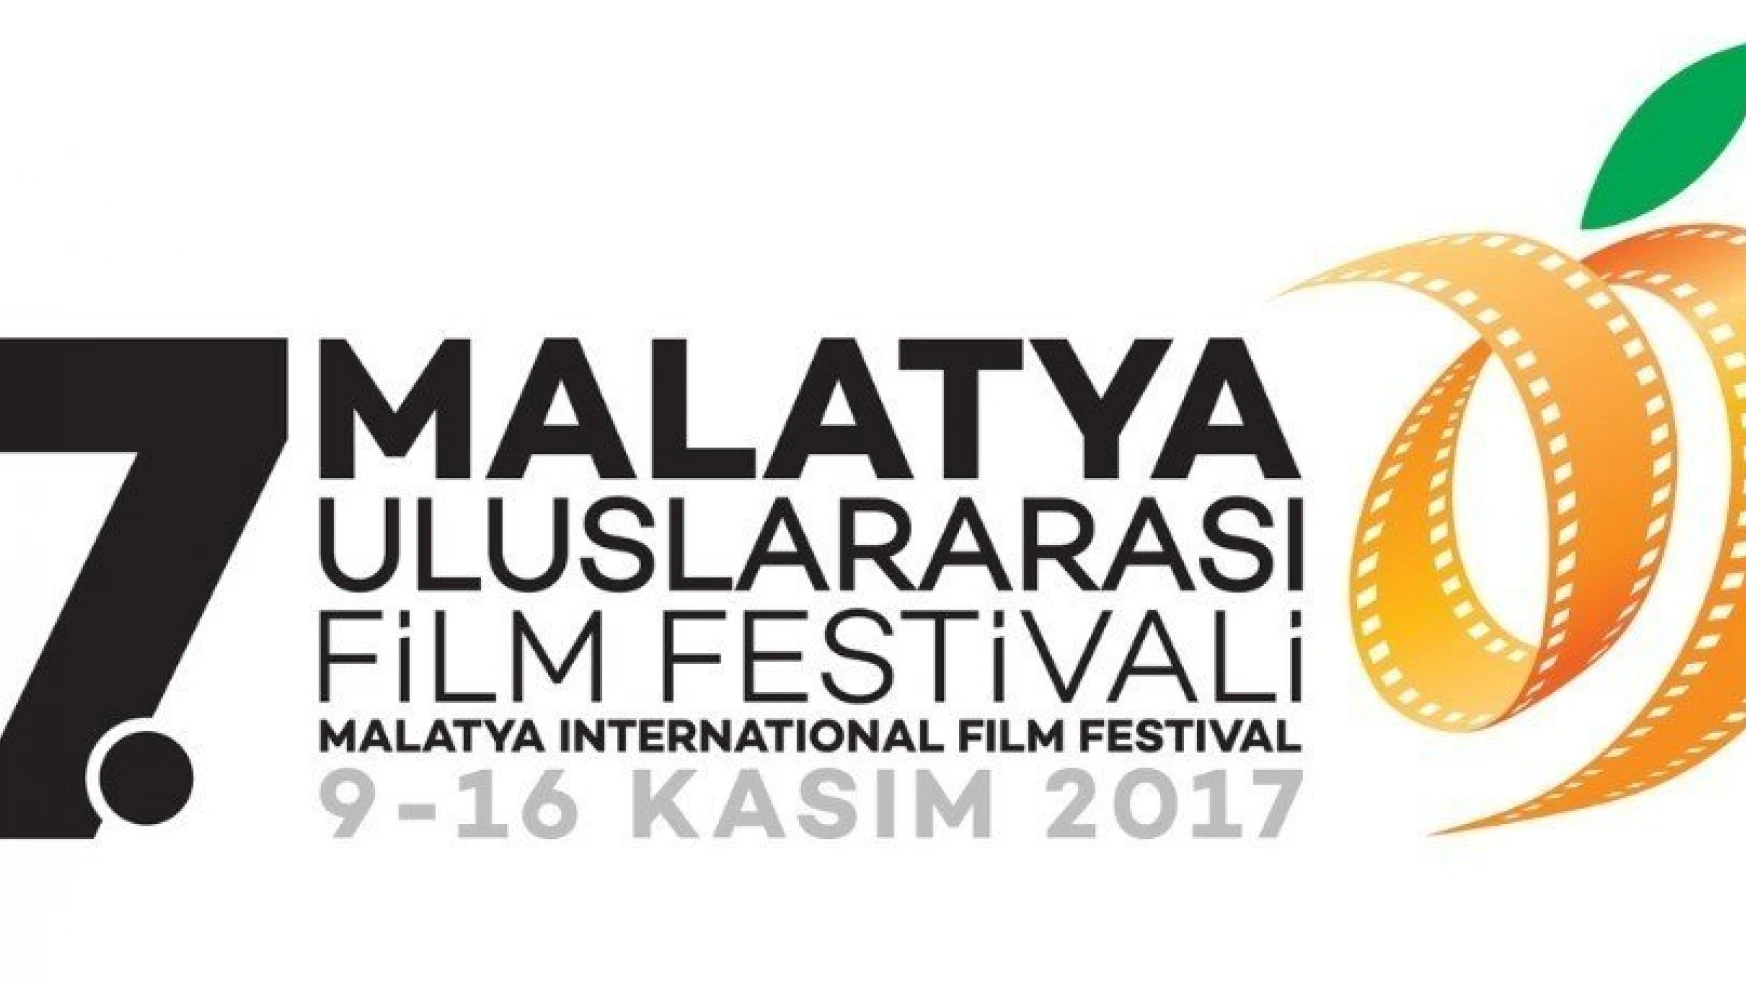 Malatya Film Platformu başvuruları 1 Eylül'de bitiyor
